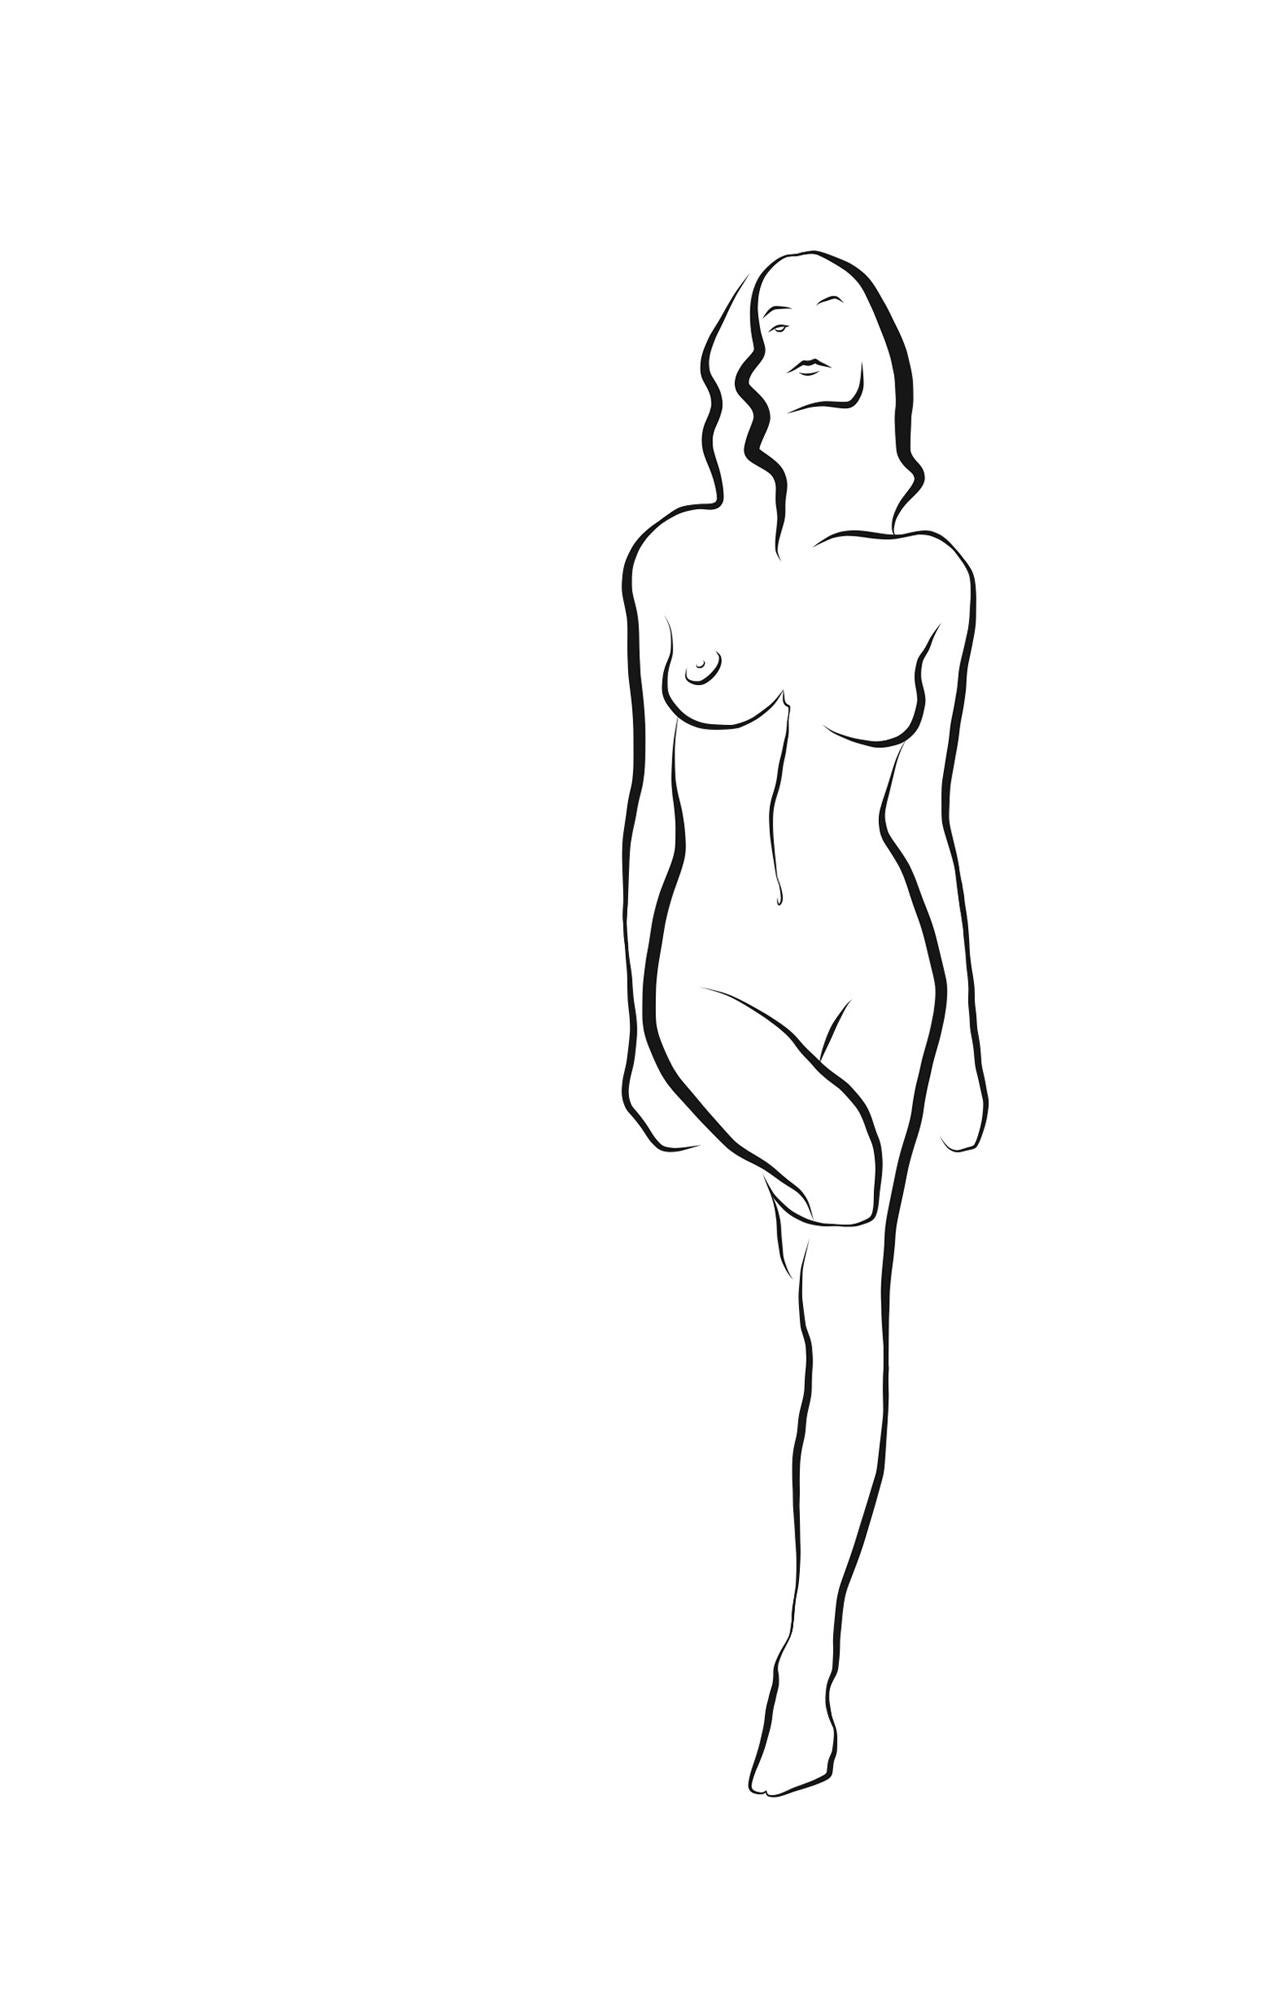 Michael Binkley Nude Print - Haiku #59, 1/50 - Digital Vector Drawing Female Standing Nude